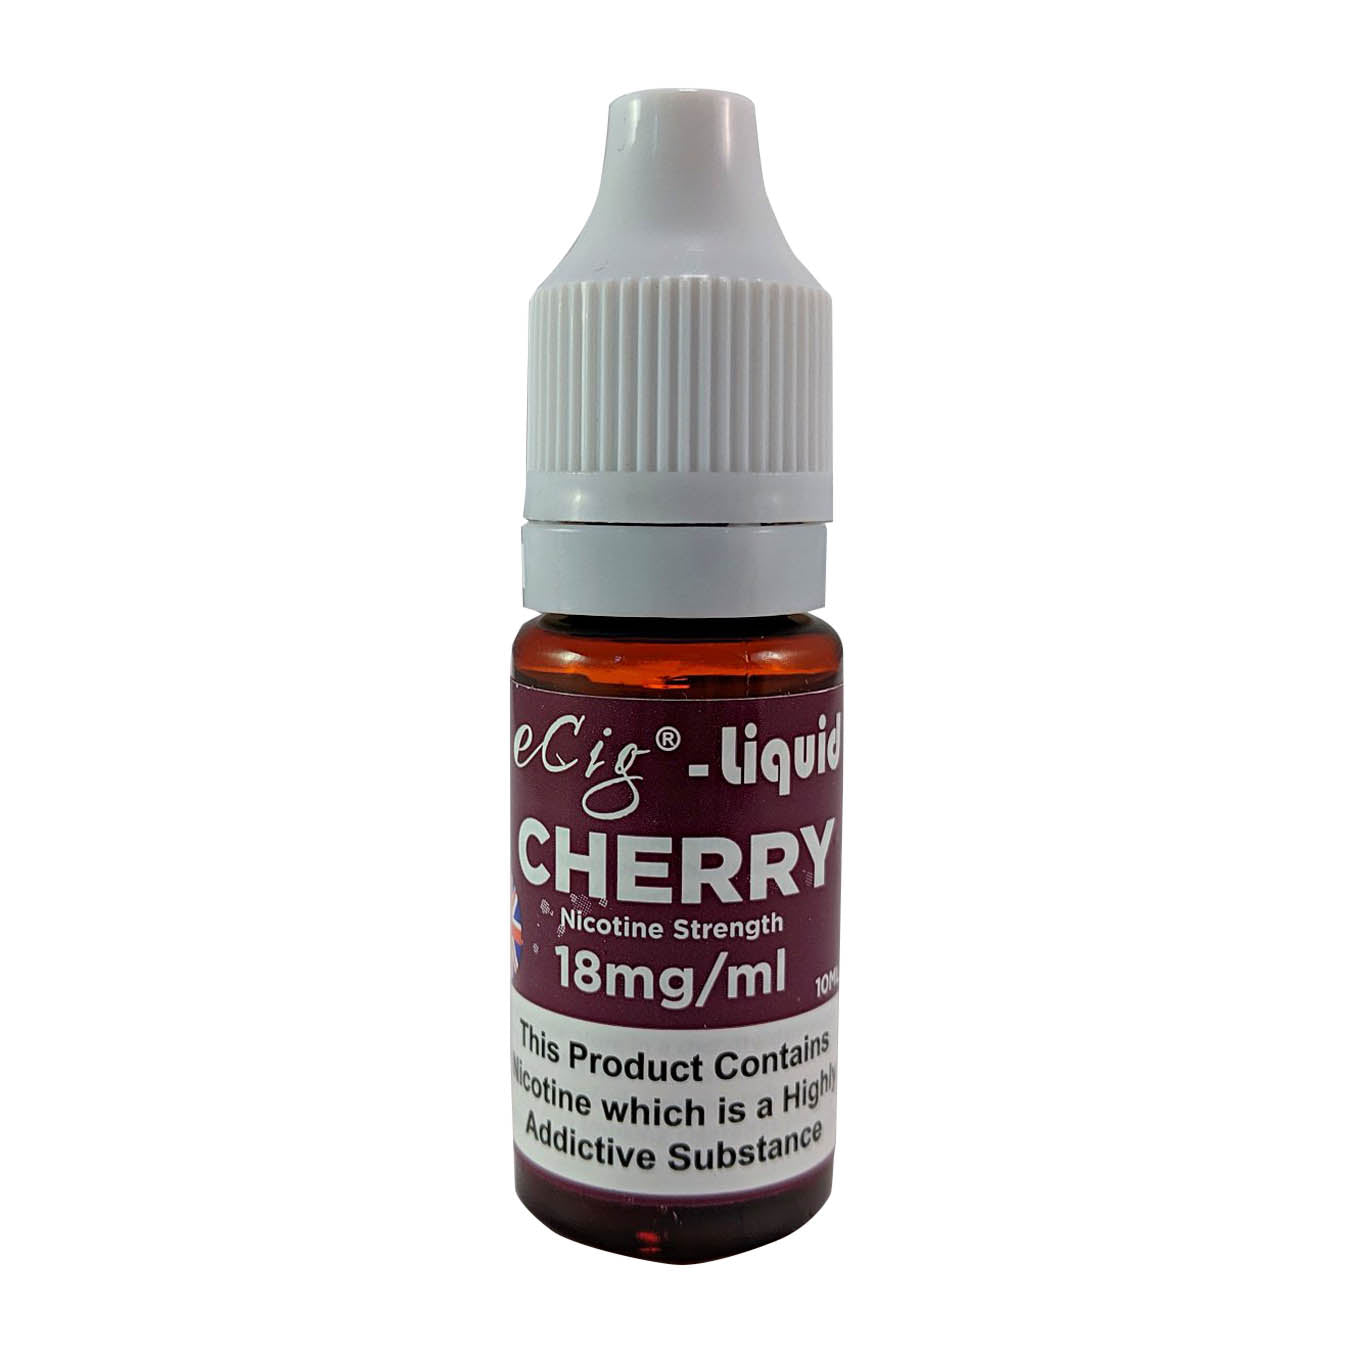 eCig-liquid Cherry 18mg 10 Pack